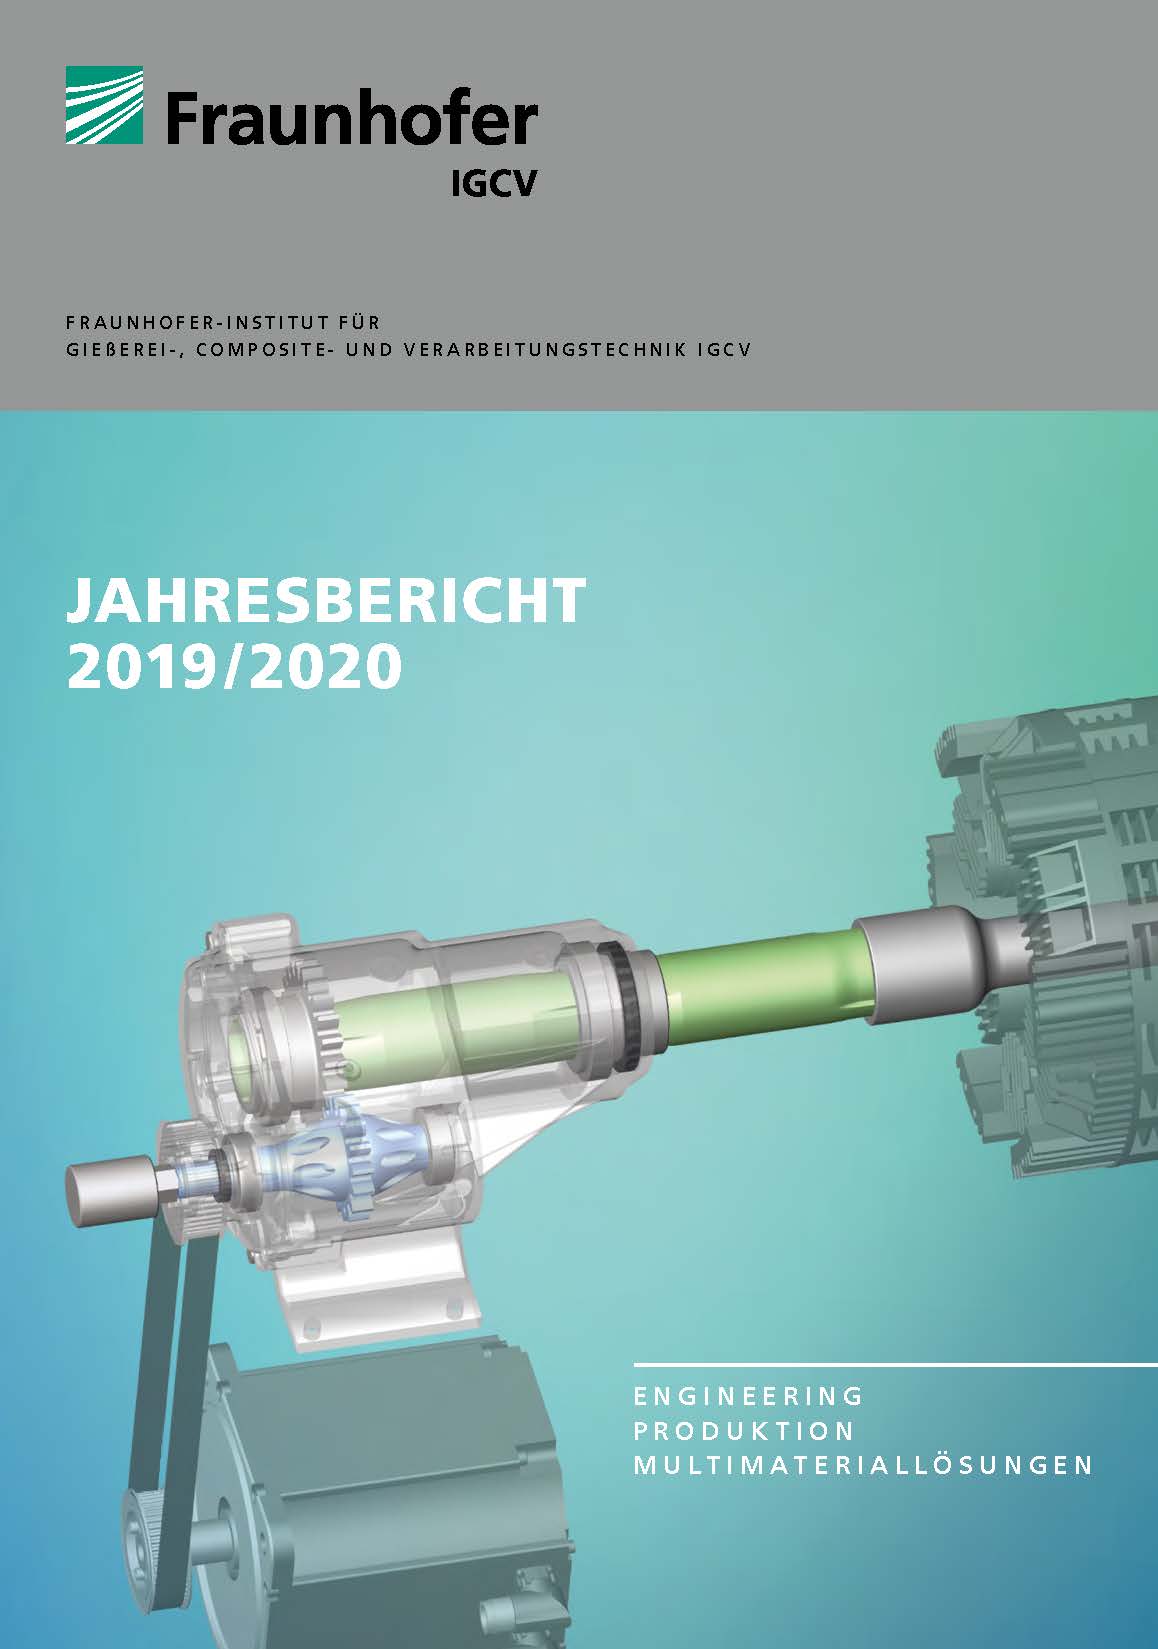 Fraunhofer IGCV annual report 2019/2020